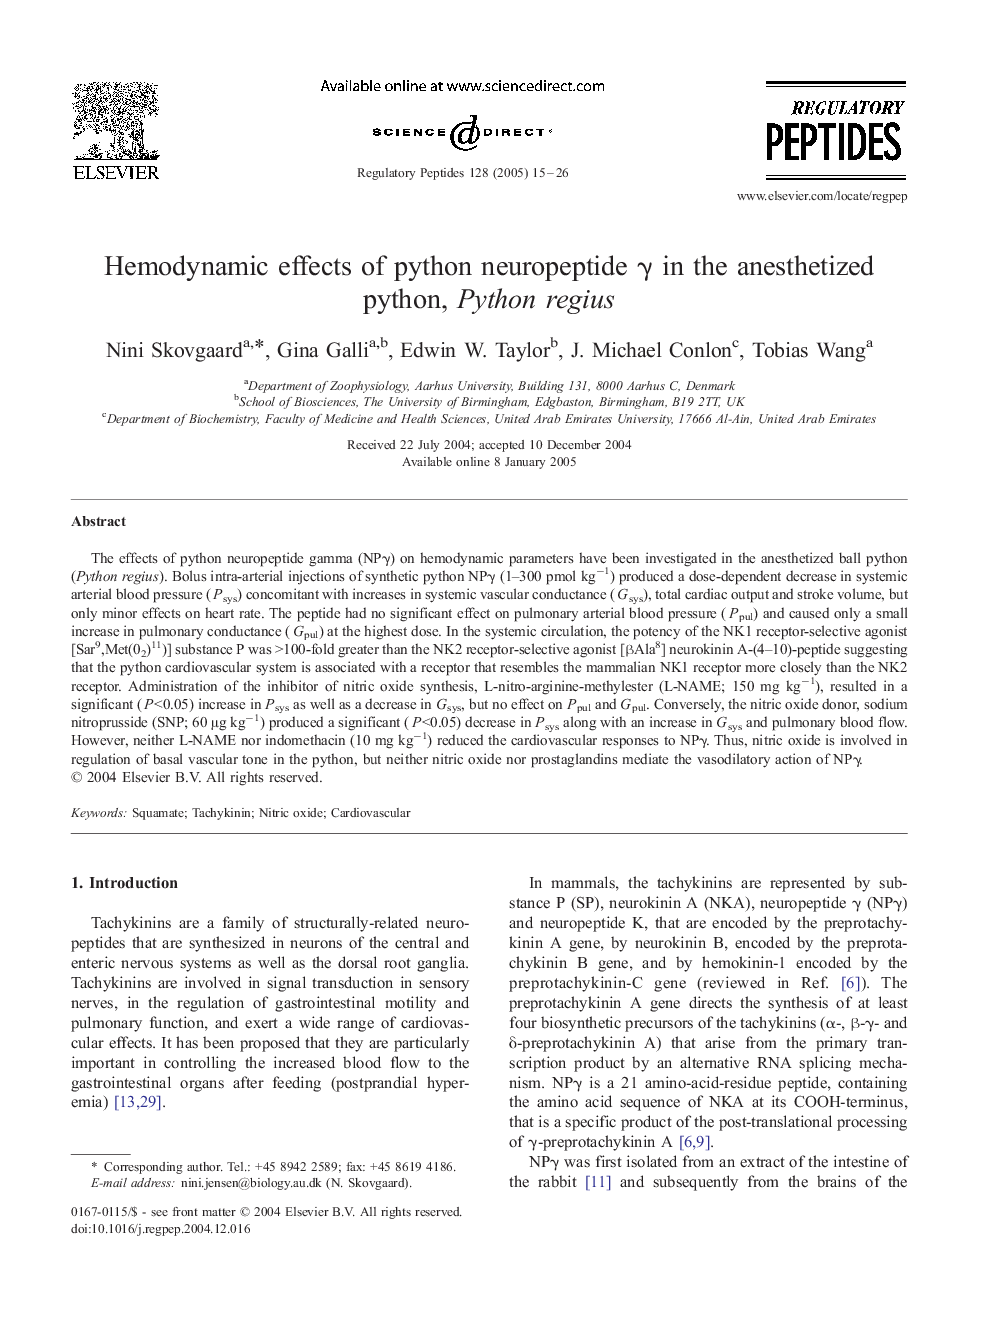 Hemodynamic effects of python neuropeptide Î³ in the anesthetized python, Python regius